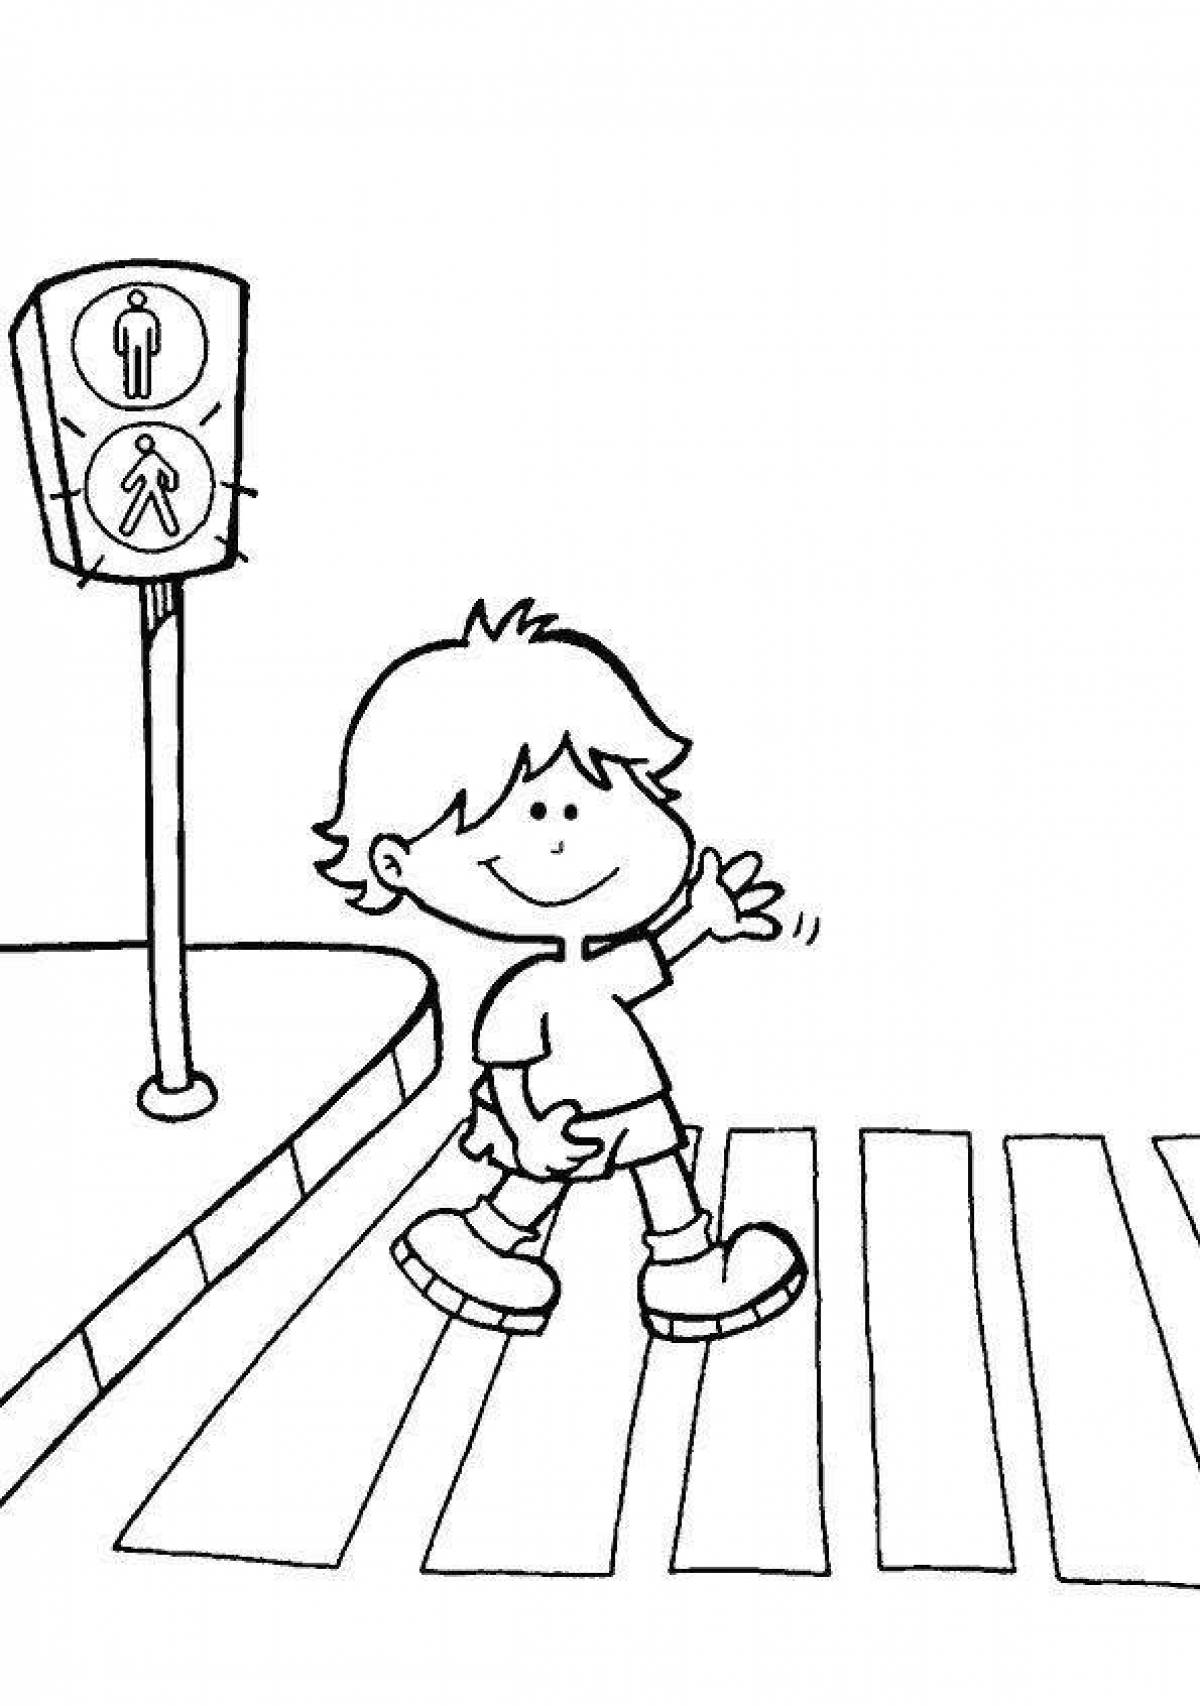 Увлекательная раскраска «правила дорожного движения» для детей